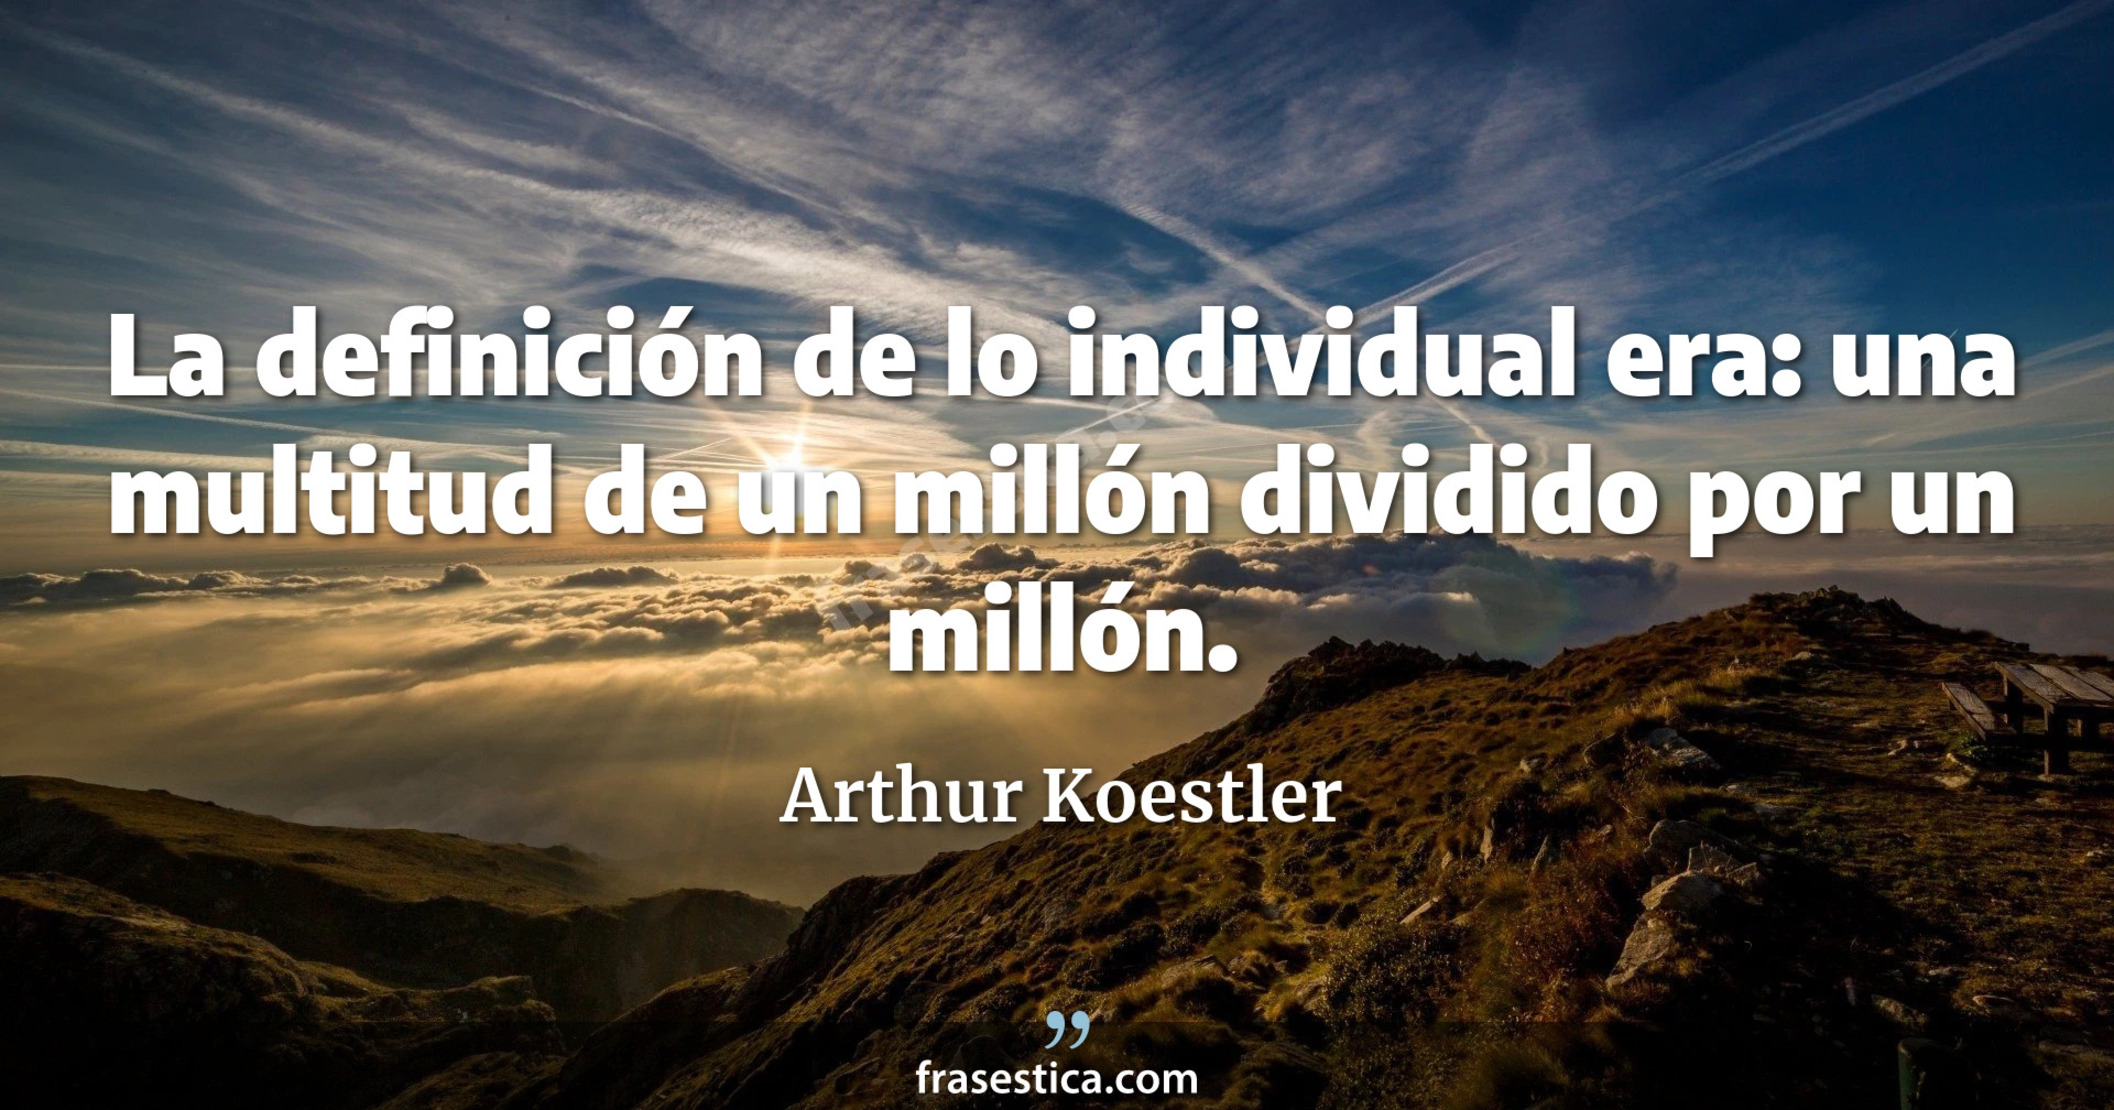 La definición de lo individual era: una multitud de un millón dividido por un millón. - Arthur Koestler